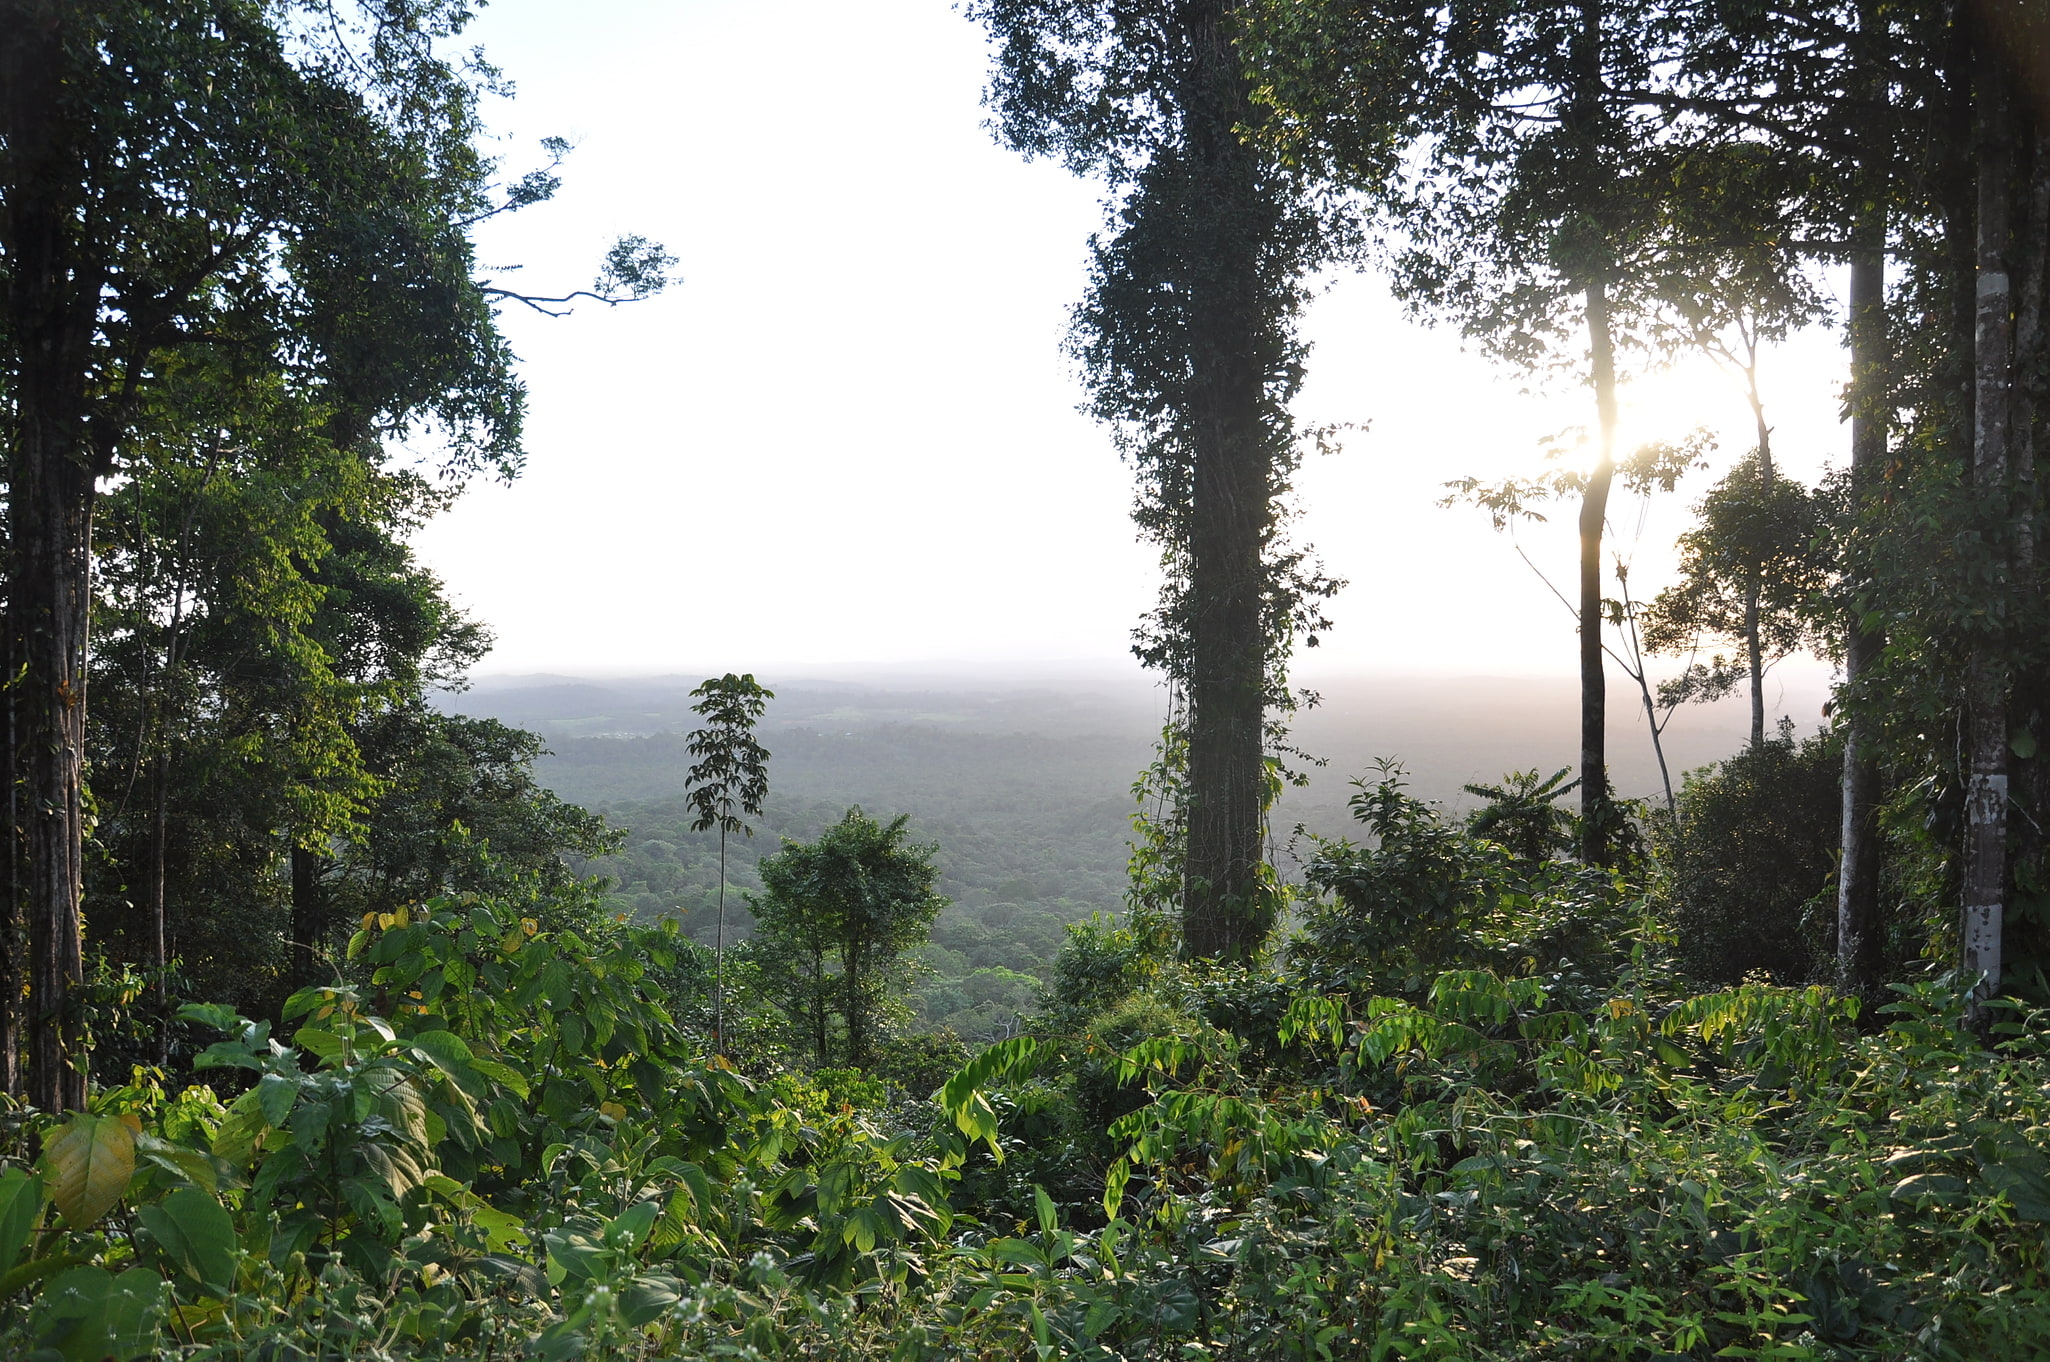 Trésor Regional Nature Reserve, Gujana Francuska